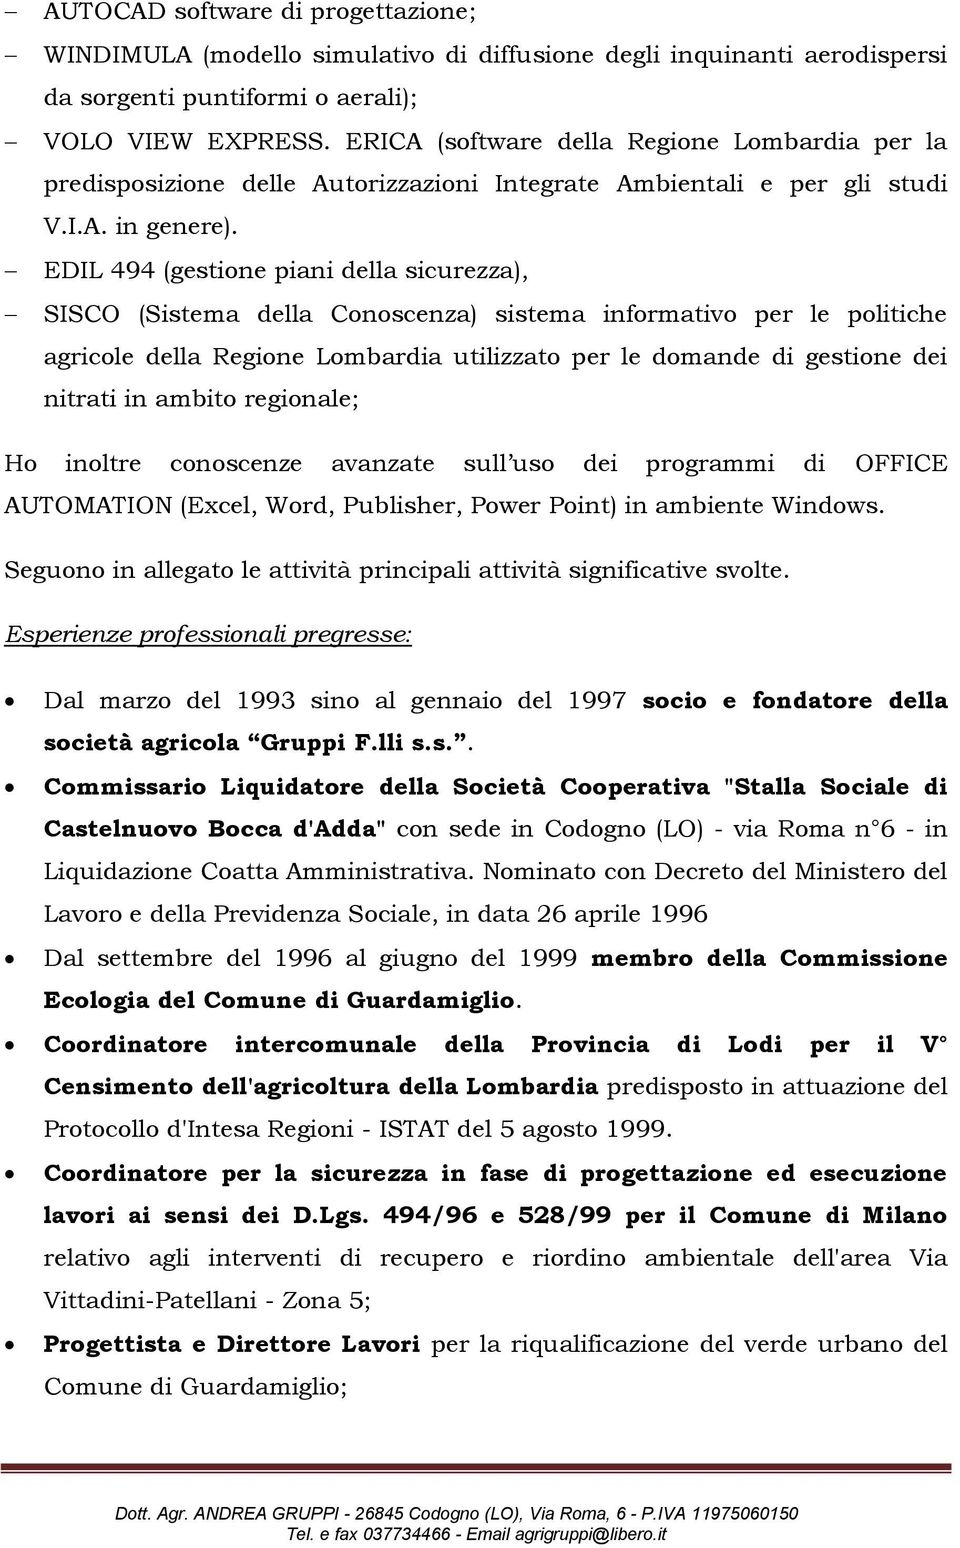 EDIL 494 (gestione piani della sicurezza), SISCO (Sistema della Conoscenza) sistema informativo per le politiche agricole della Regione Lombardia utilizzato per le domande di gestione dei nitrati in